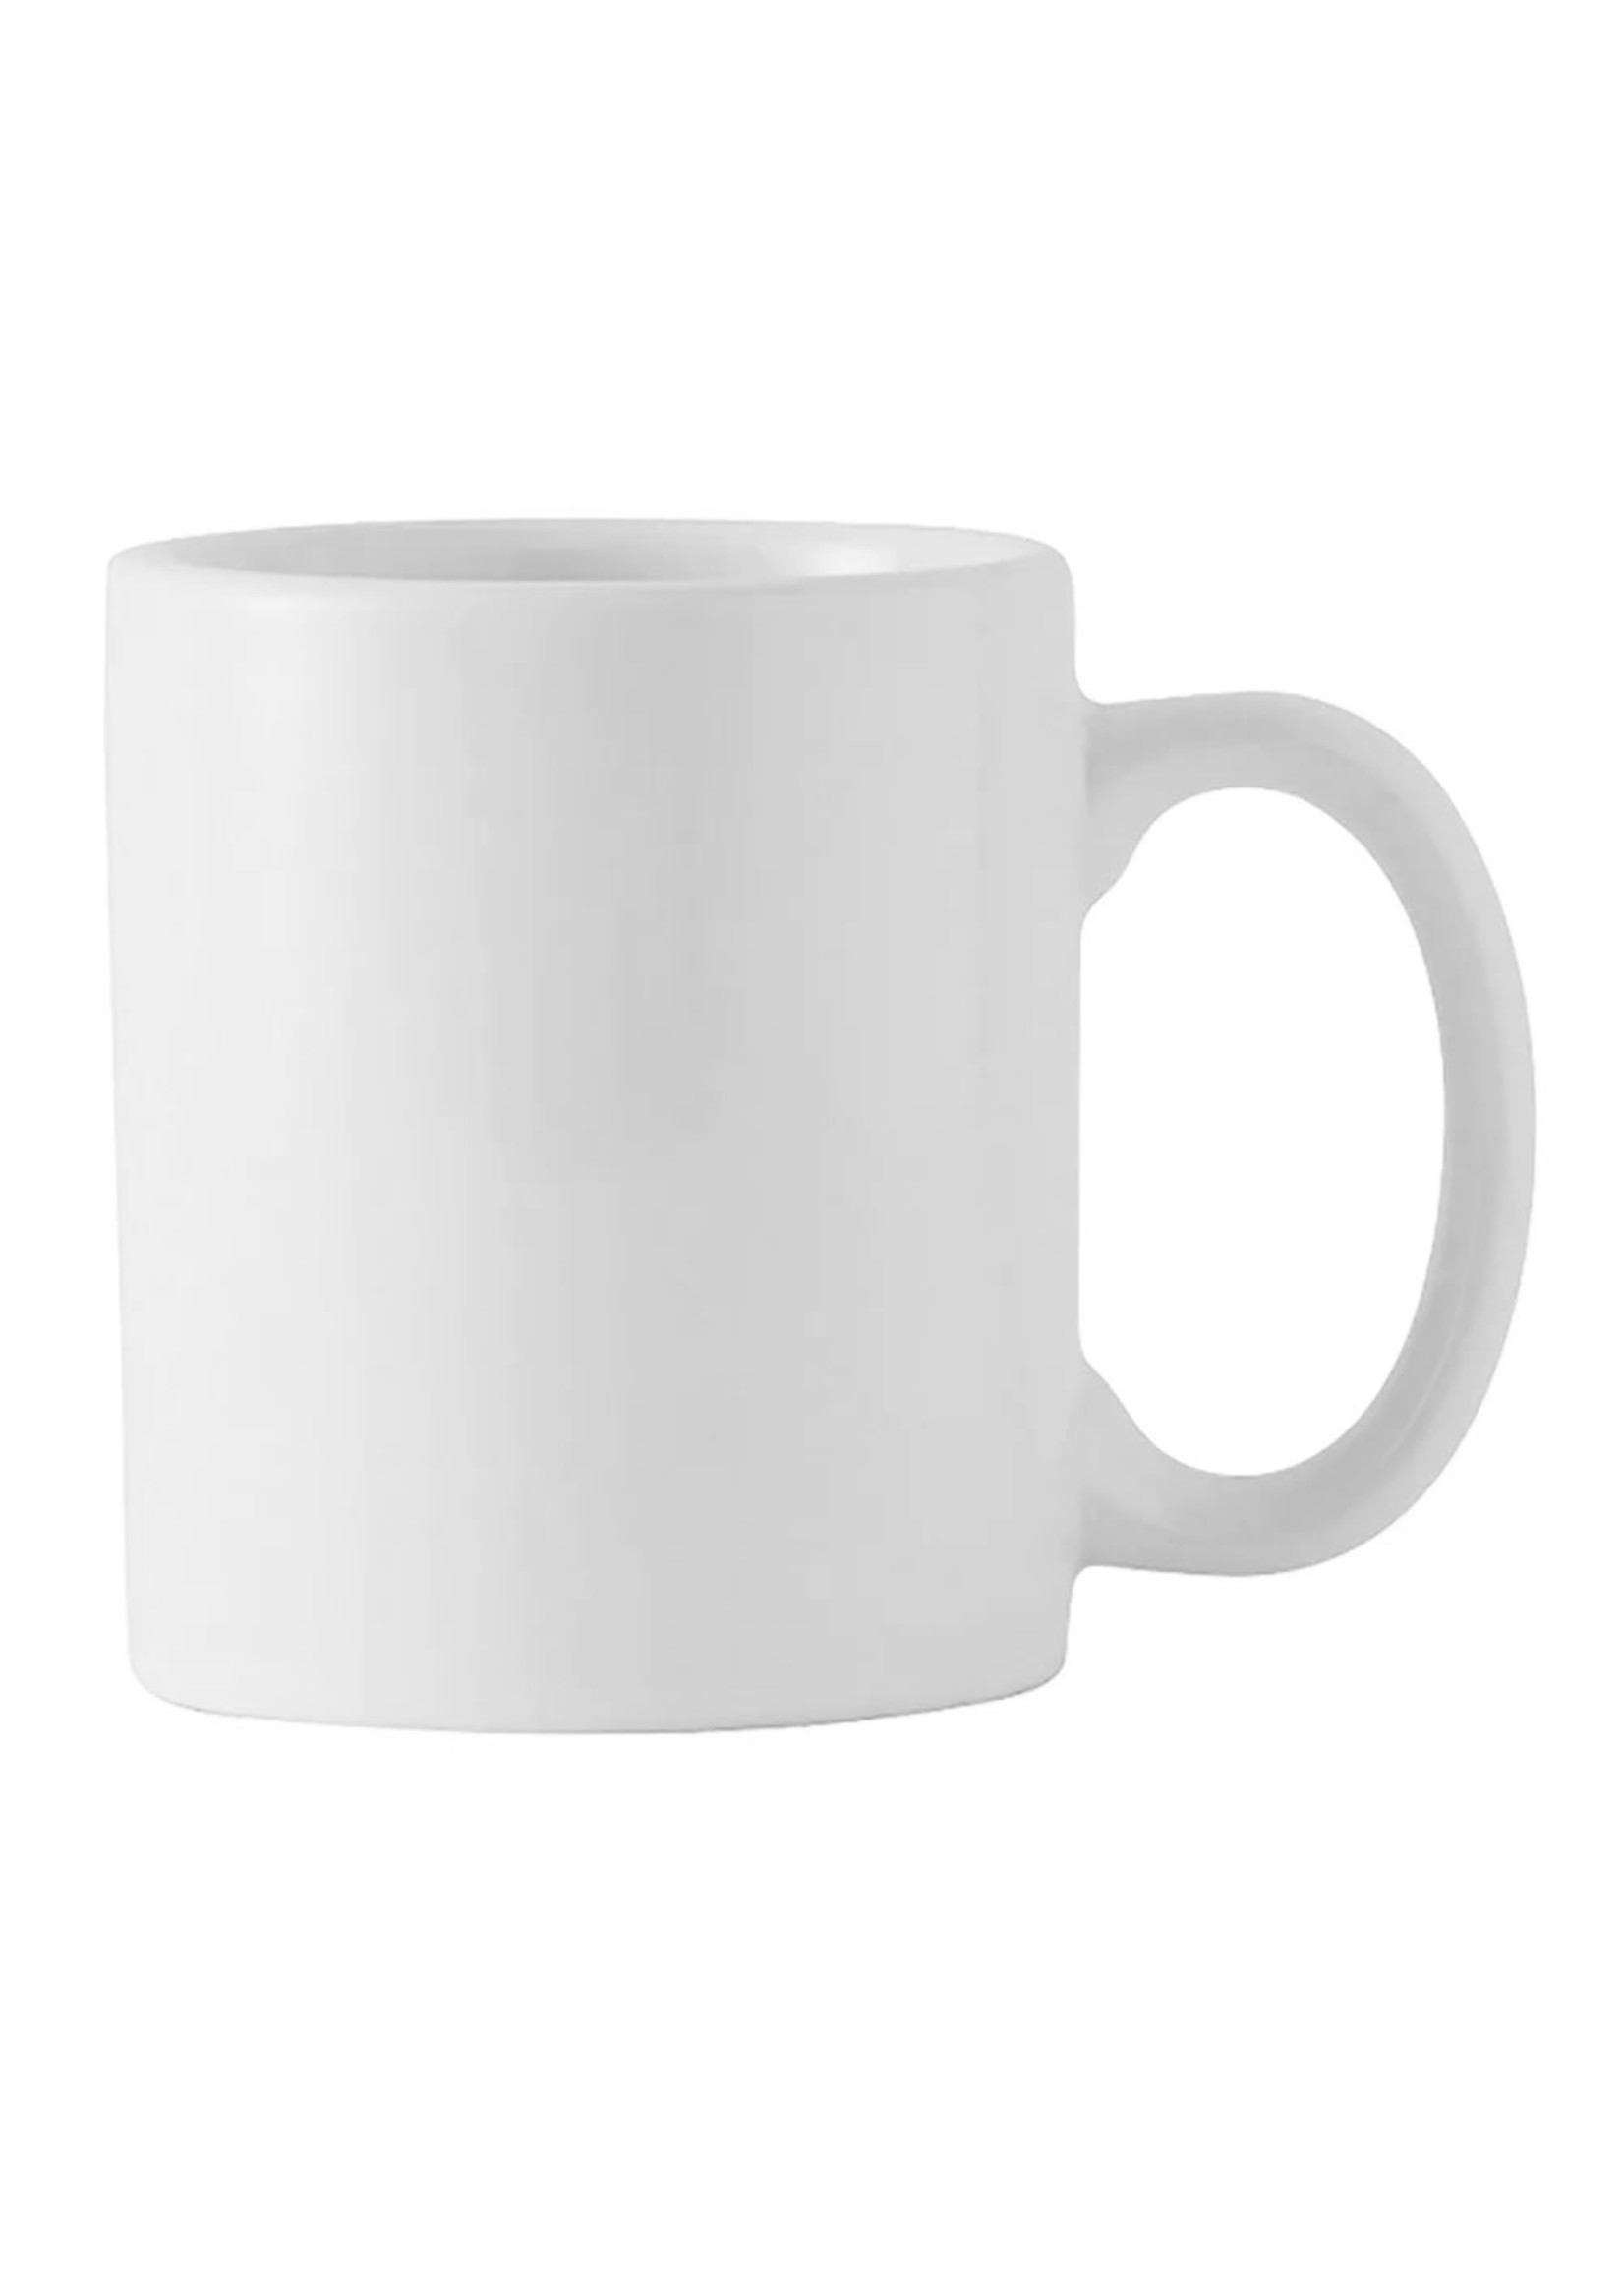 Coffee Mug, 15oz